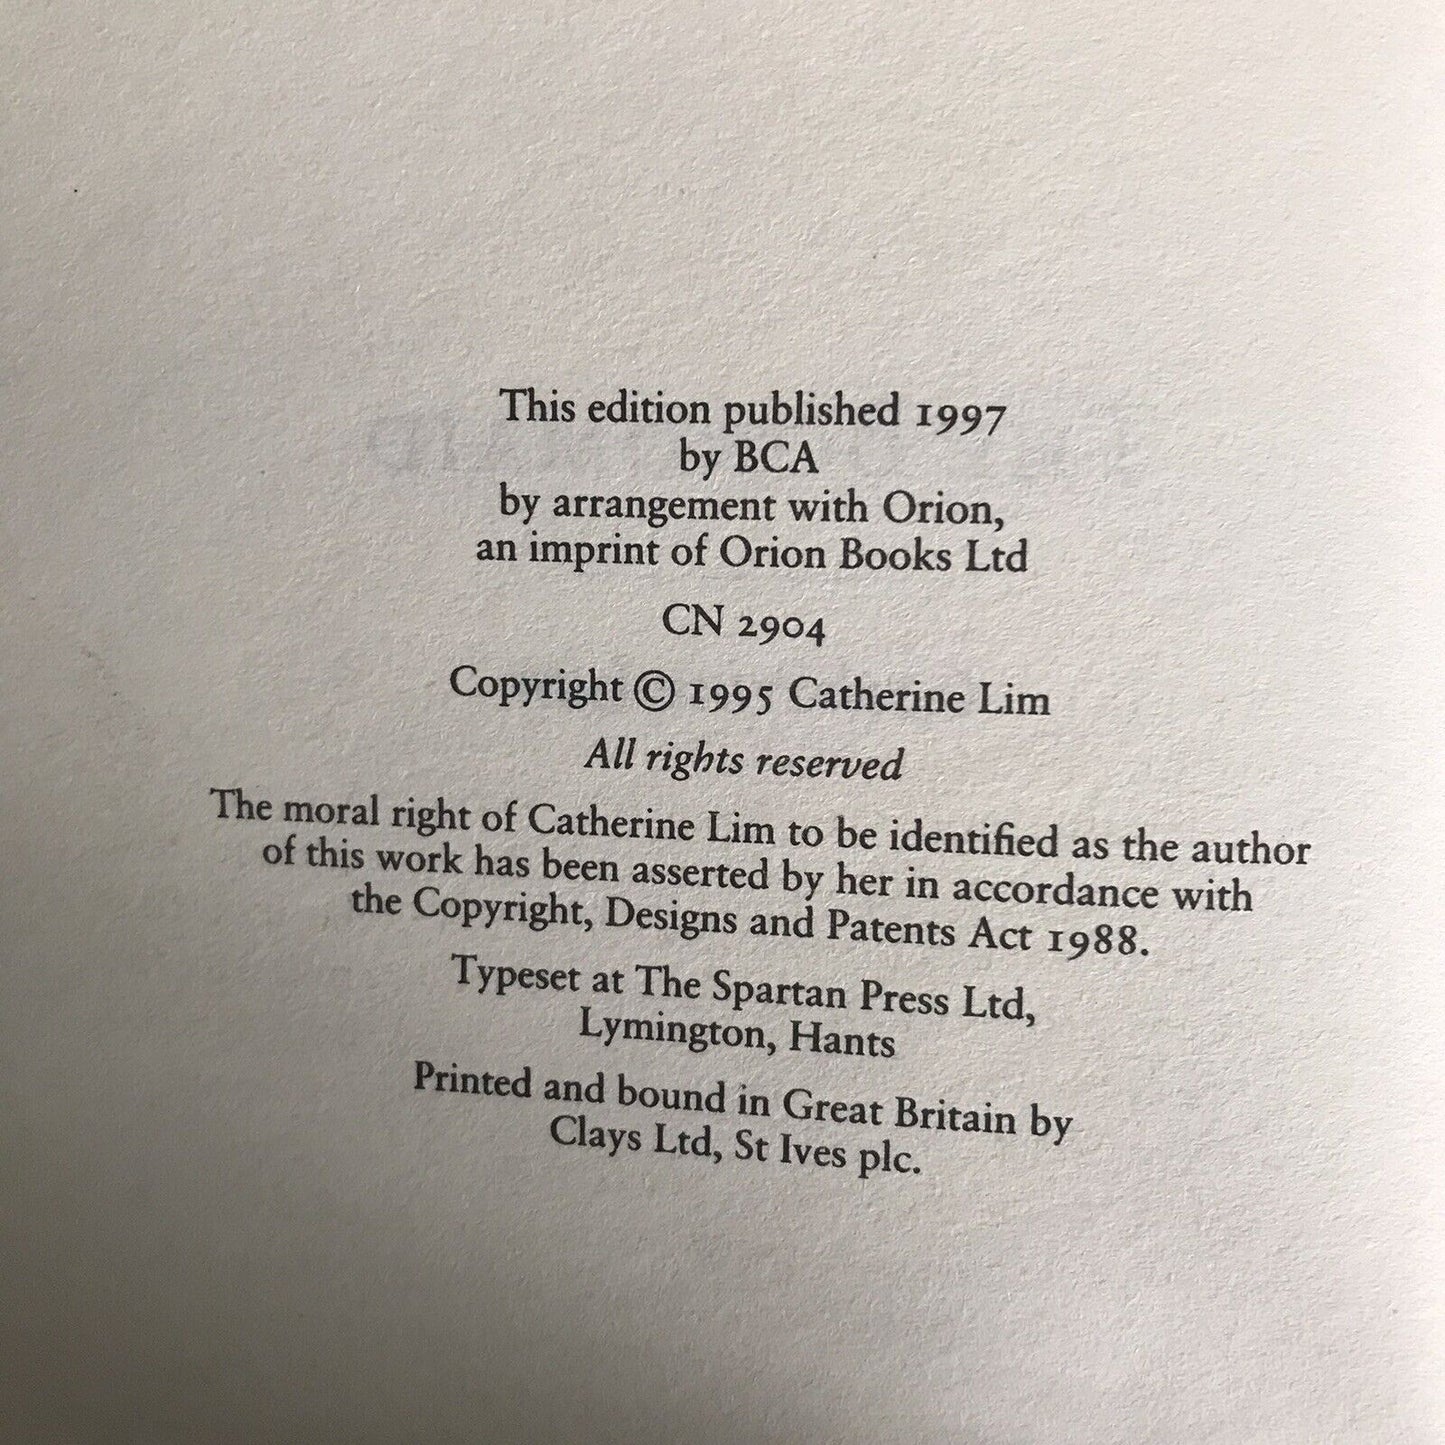 1997*1.*The Bondmaid von Catherine Lim (BCA-Verlag), gebundenes Buch